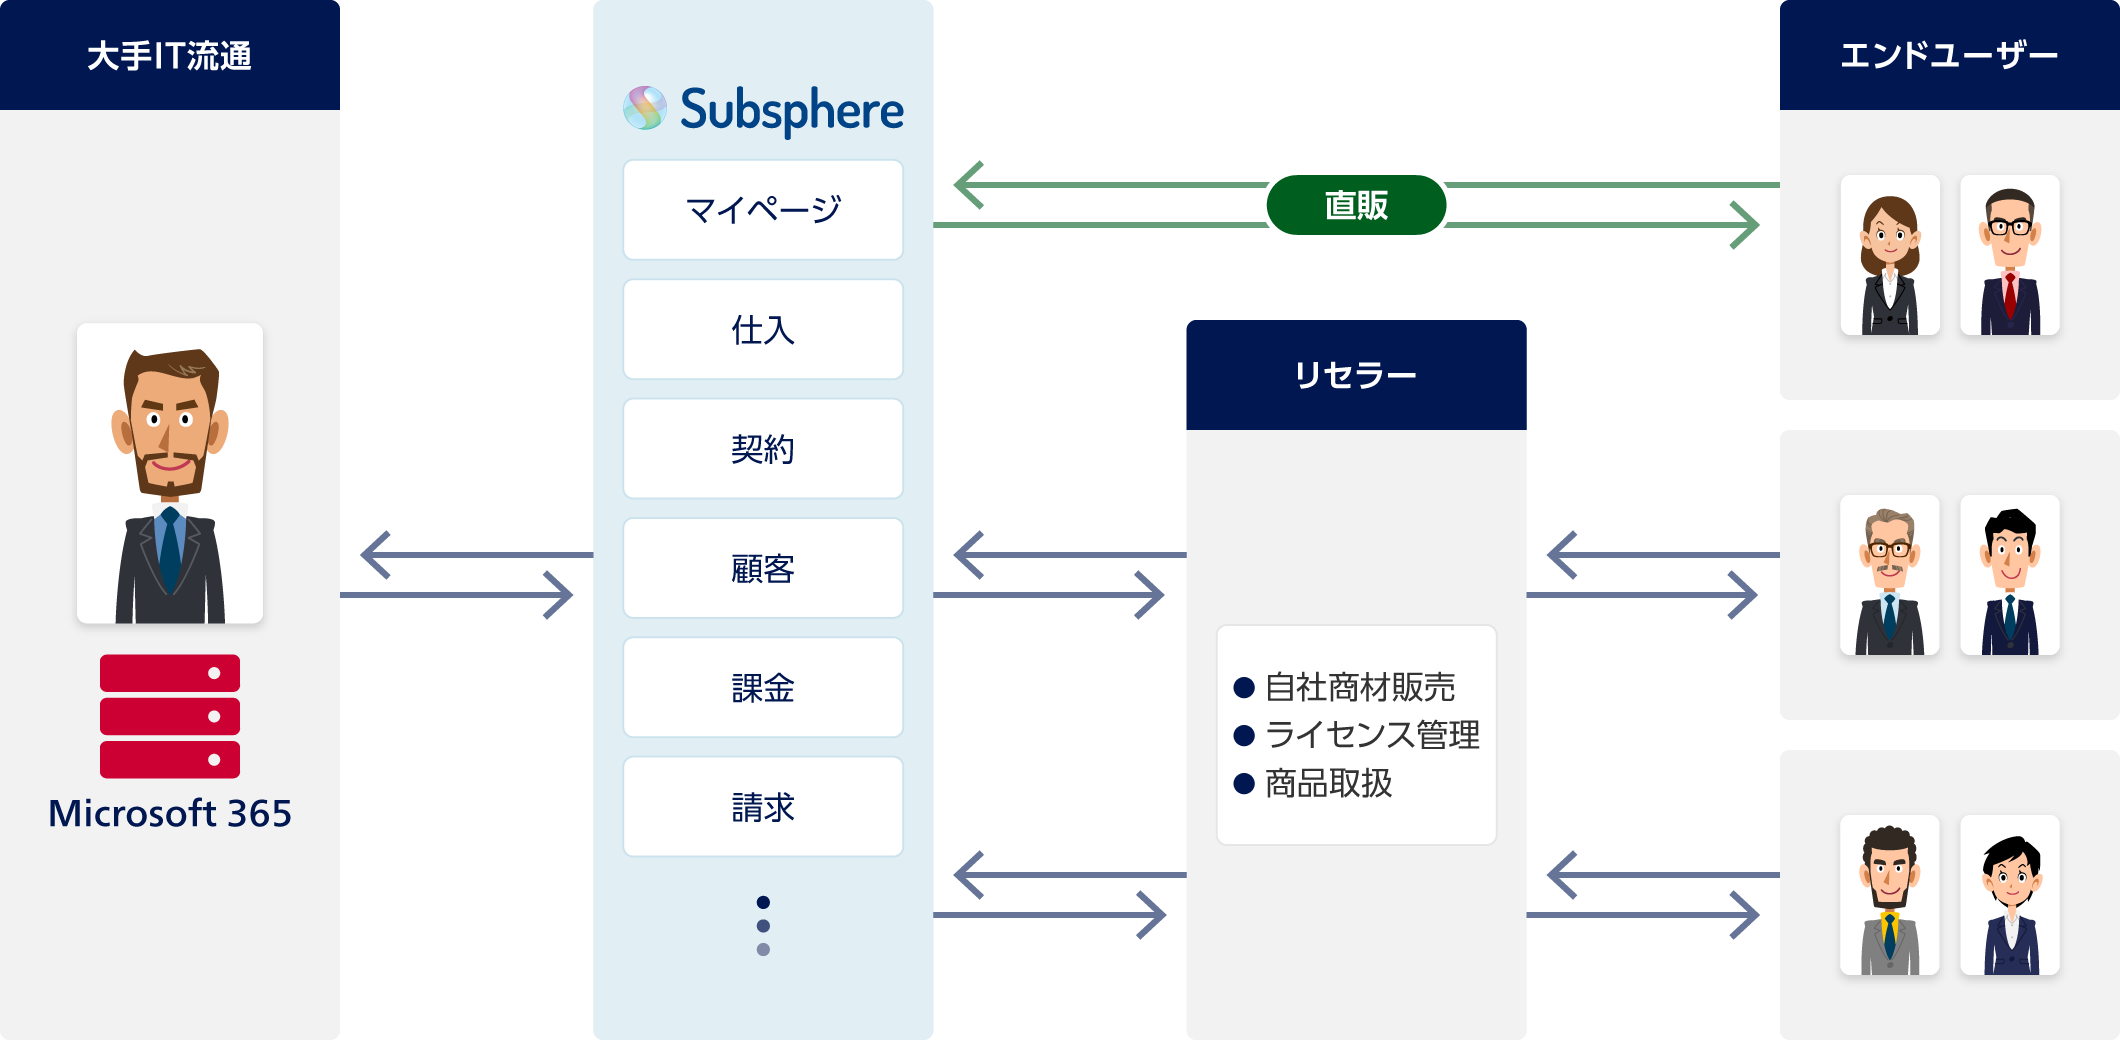 大手IT流通のMicrosoft 365とSubsphere（サブスフィア）を連携。Subsphere（サブスフィア）で、マイページの提供、仕入・契約・顧客・課金・請求管理など。あるエンドユーザーはSubsphere（サブスフィア）で直販。リセラーはSubsphere（サブスフィア）を利用。リセラーは、自社商材販売・ライセンス管理・商品取扱。あるエンドユーザーはリセラーと取引。